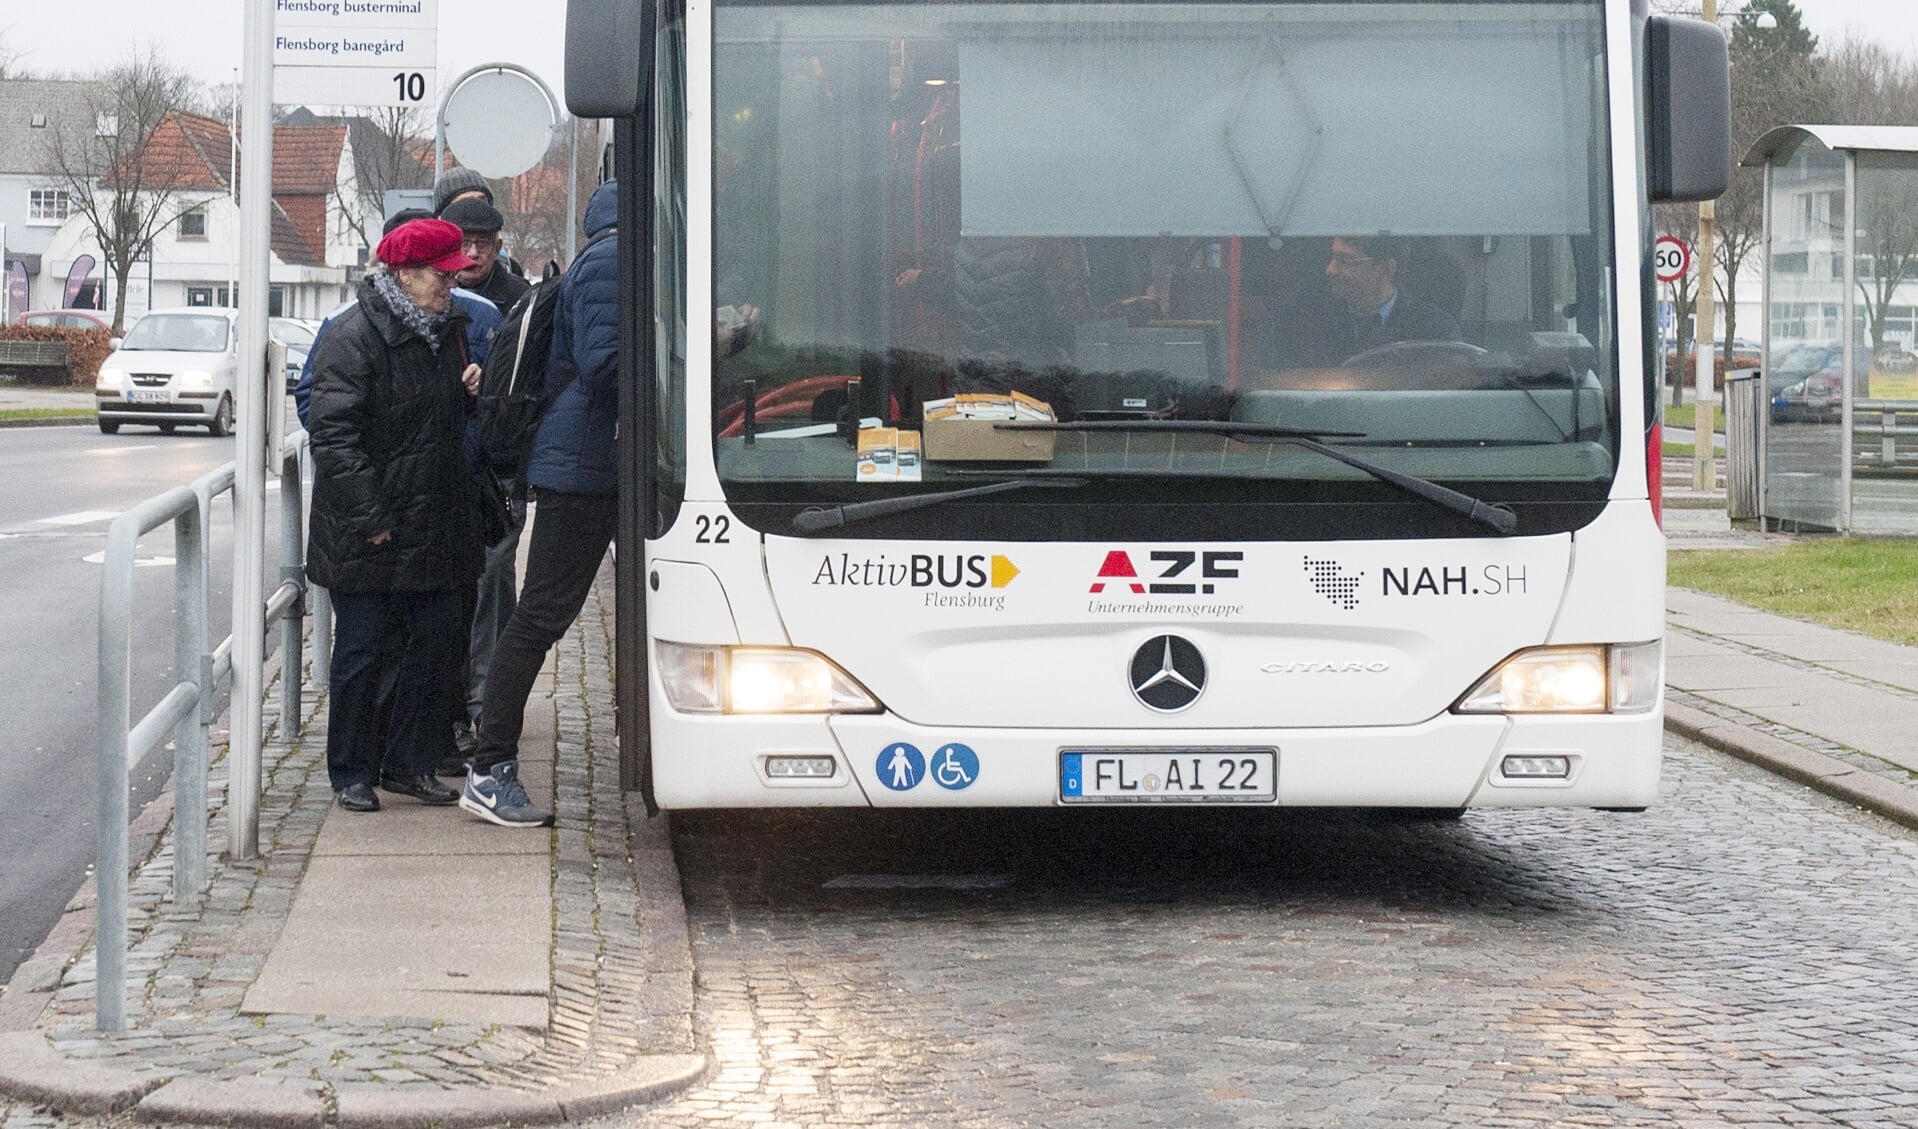 Aktiv Bus sender i løbet af de næste uger flere busser på gaderne. Arkivfoto: Tim Riediger